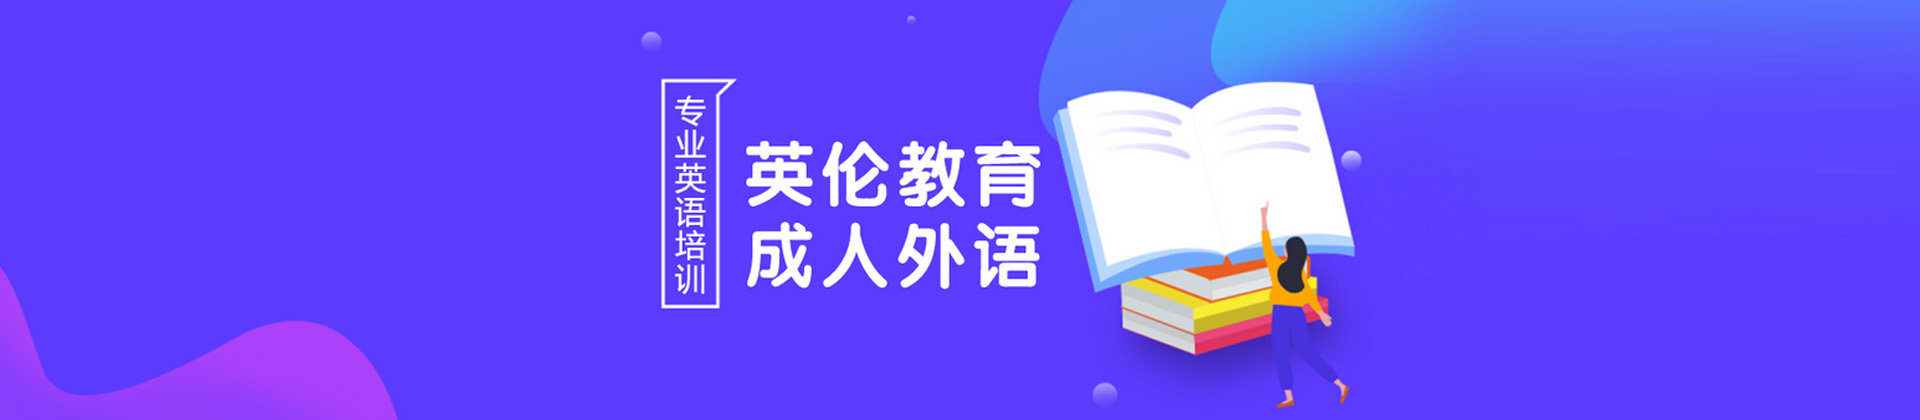 广州英伦外语培训中心